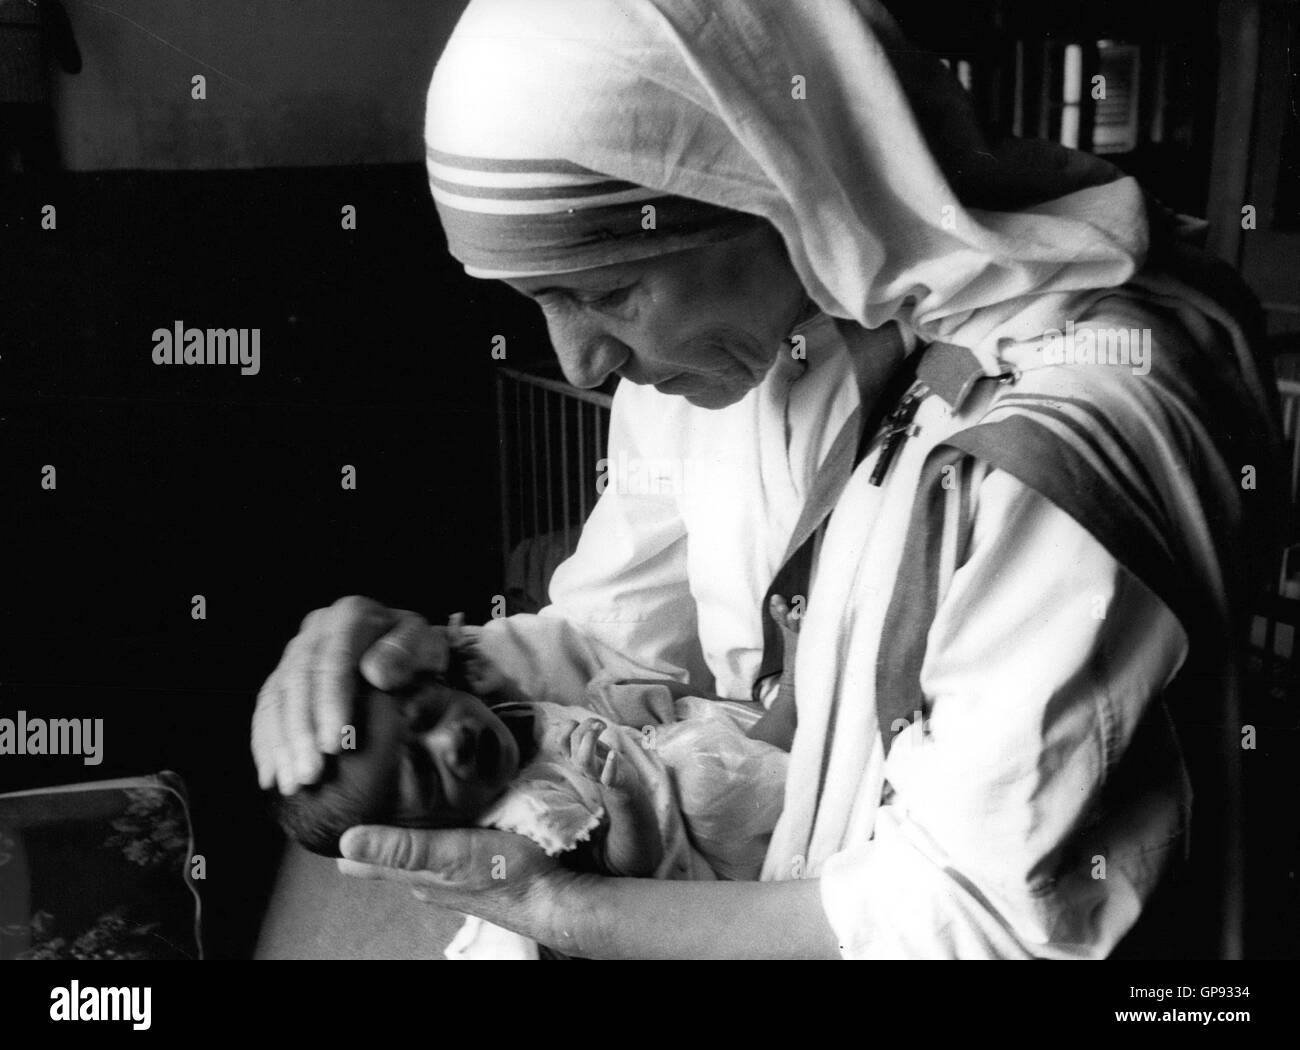 Datei. 3. August 2016. Mutter Teresa um Deutungshoheit werden nach 2. Wunder Vatikan erklärt. Mutter TERESA, die ihr Leben Indiens Armen zu helfen gewidmet, wird ein Heiliger der römisch-katholischen Kirche erfolgen. Am Sonntag erkennt die katholische Kirche offiziell Mutter Teresa von Kalkutta (Kolkata) als ein Heiliger. Sie begleiten eine Gruppe von mehr als 10.000 Menschen, anerkannt von der Kirche als Heilige aufgrund der Art und Weise, wie, die Sie gelebt. Im Bild: 1979 - Indien - bringen Sie die Hände von Mutter Teresa Komfort und Sicherheit für das verwaiste Kind. © Keystone Bilder USA/ZUMAPRESS.com/Alamy Live-Nachrichten Stockfoto